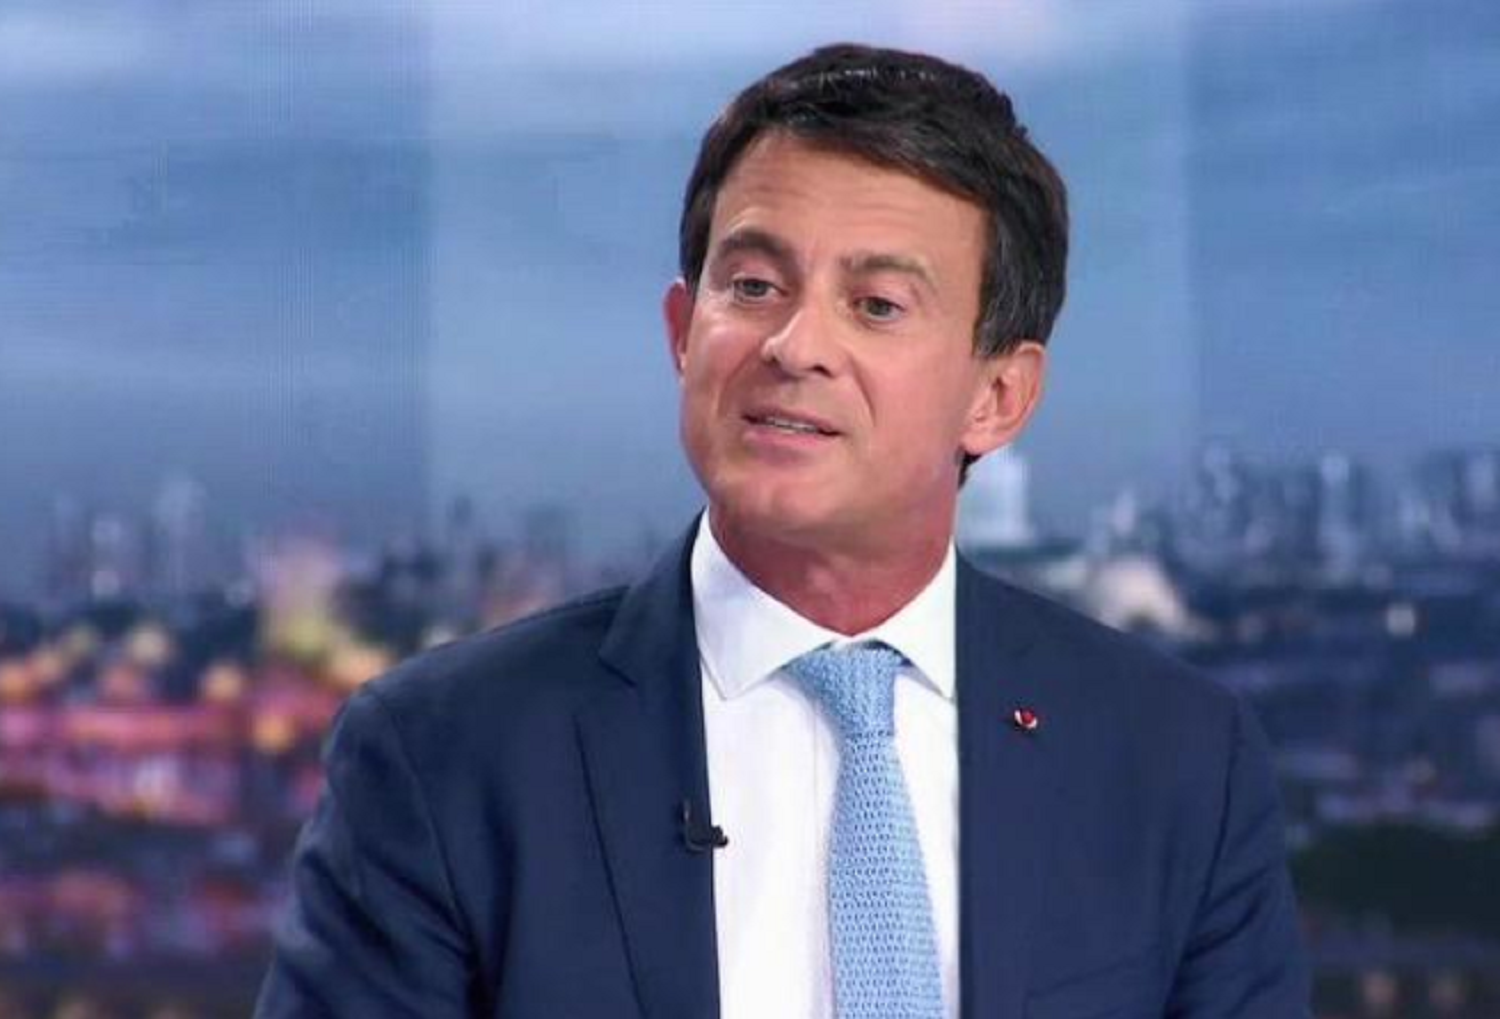 El republicano (francés) Valls sale en defensa del rey Felipe VI